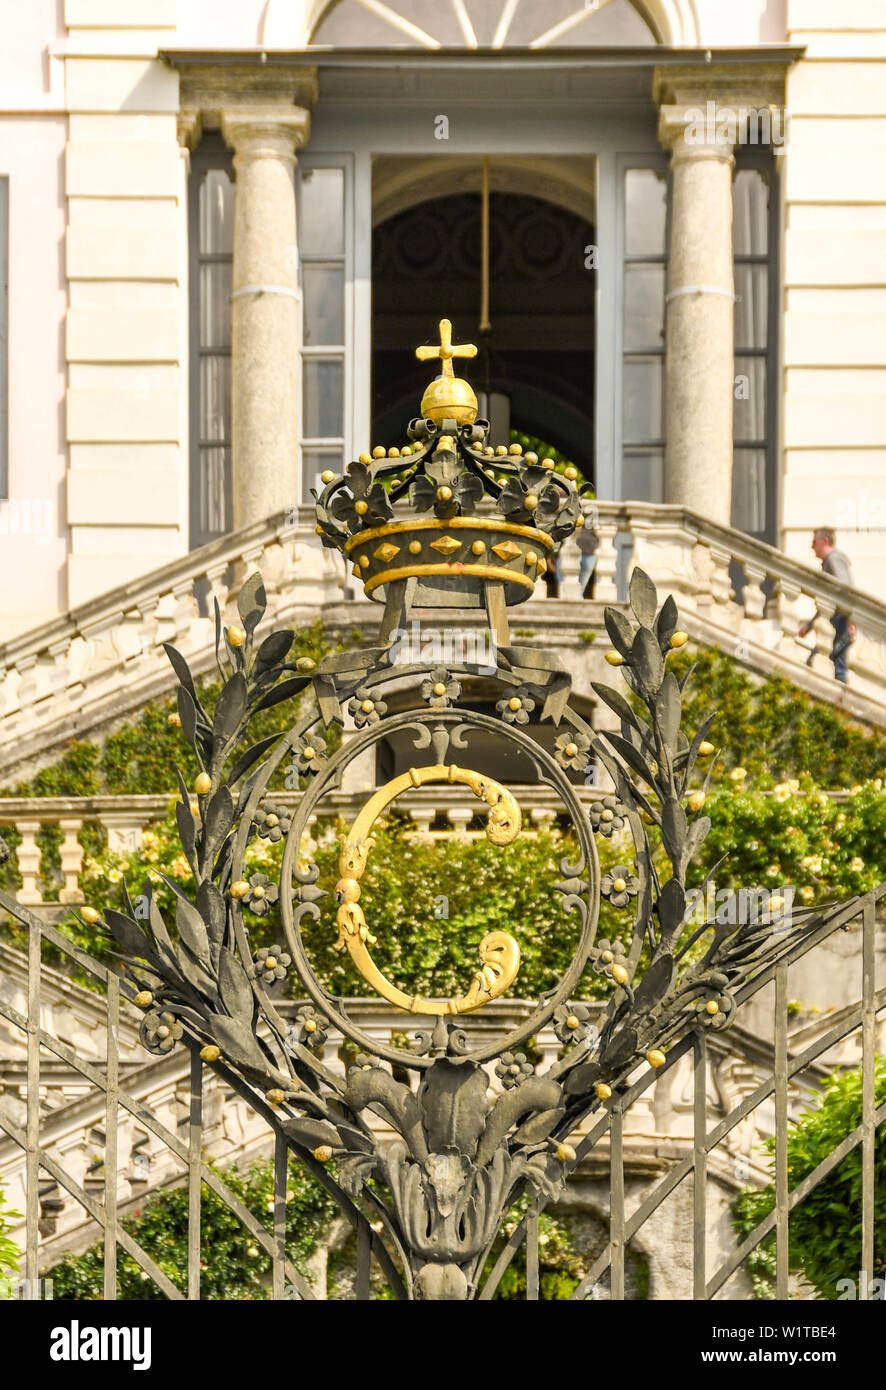 TREMEZZO, LAKE COMO, ITALY - JUNE 2019: Close up view of the ornamental gate in front of the Villa Carlotta in Tremezzo on Lake Como. Stock Photo